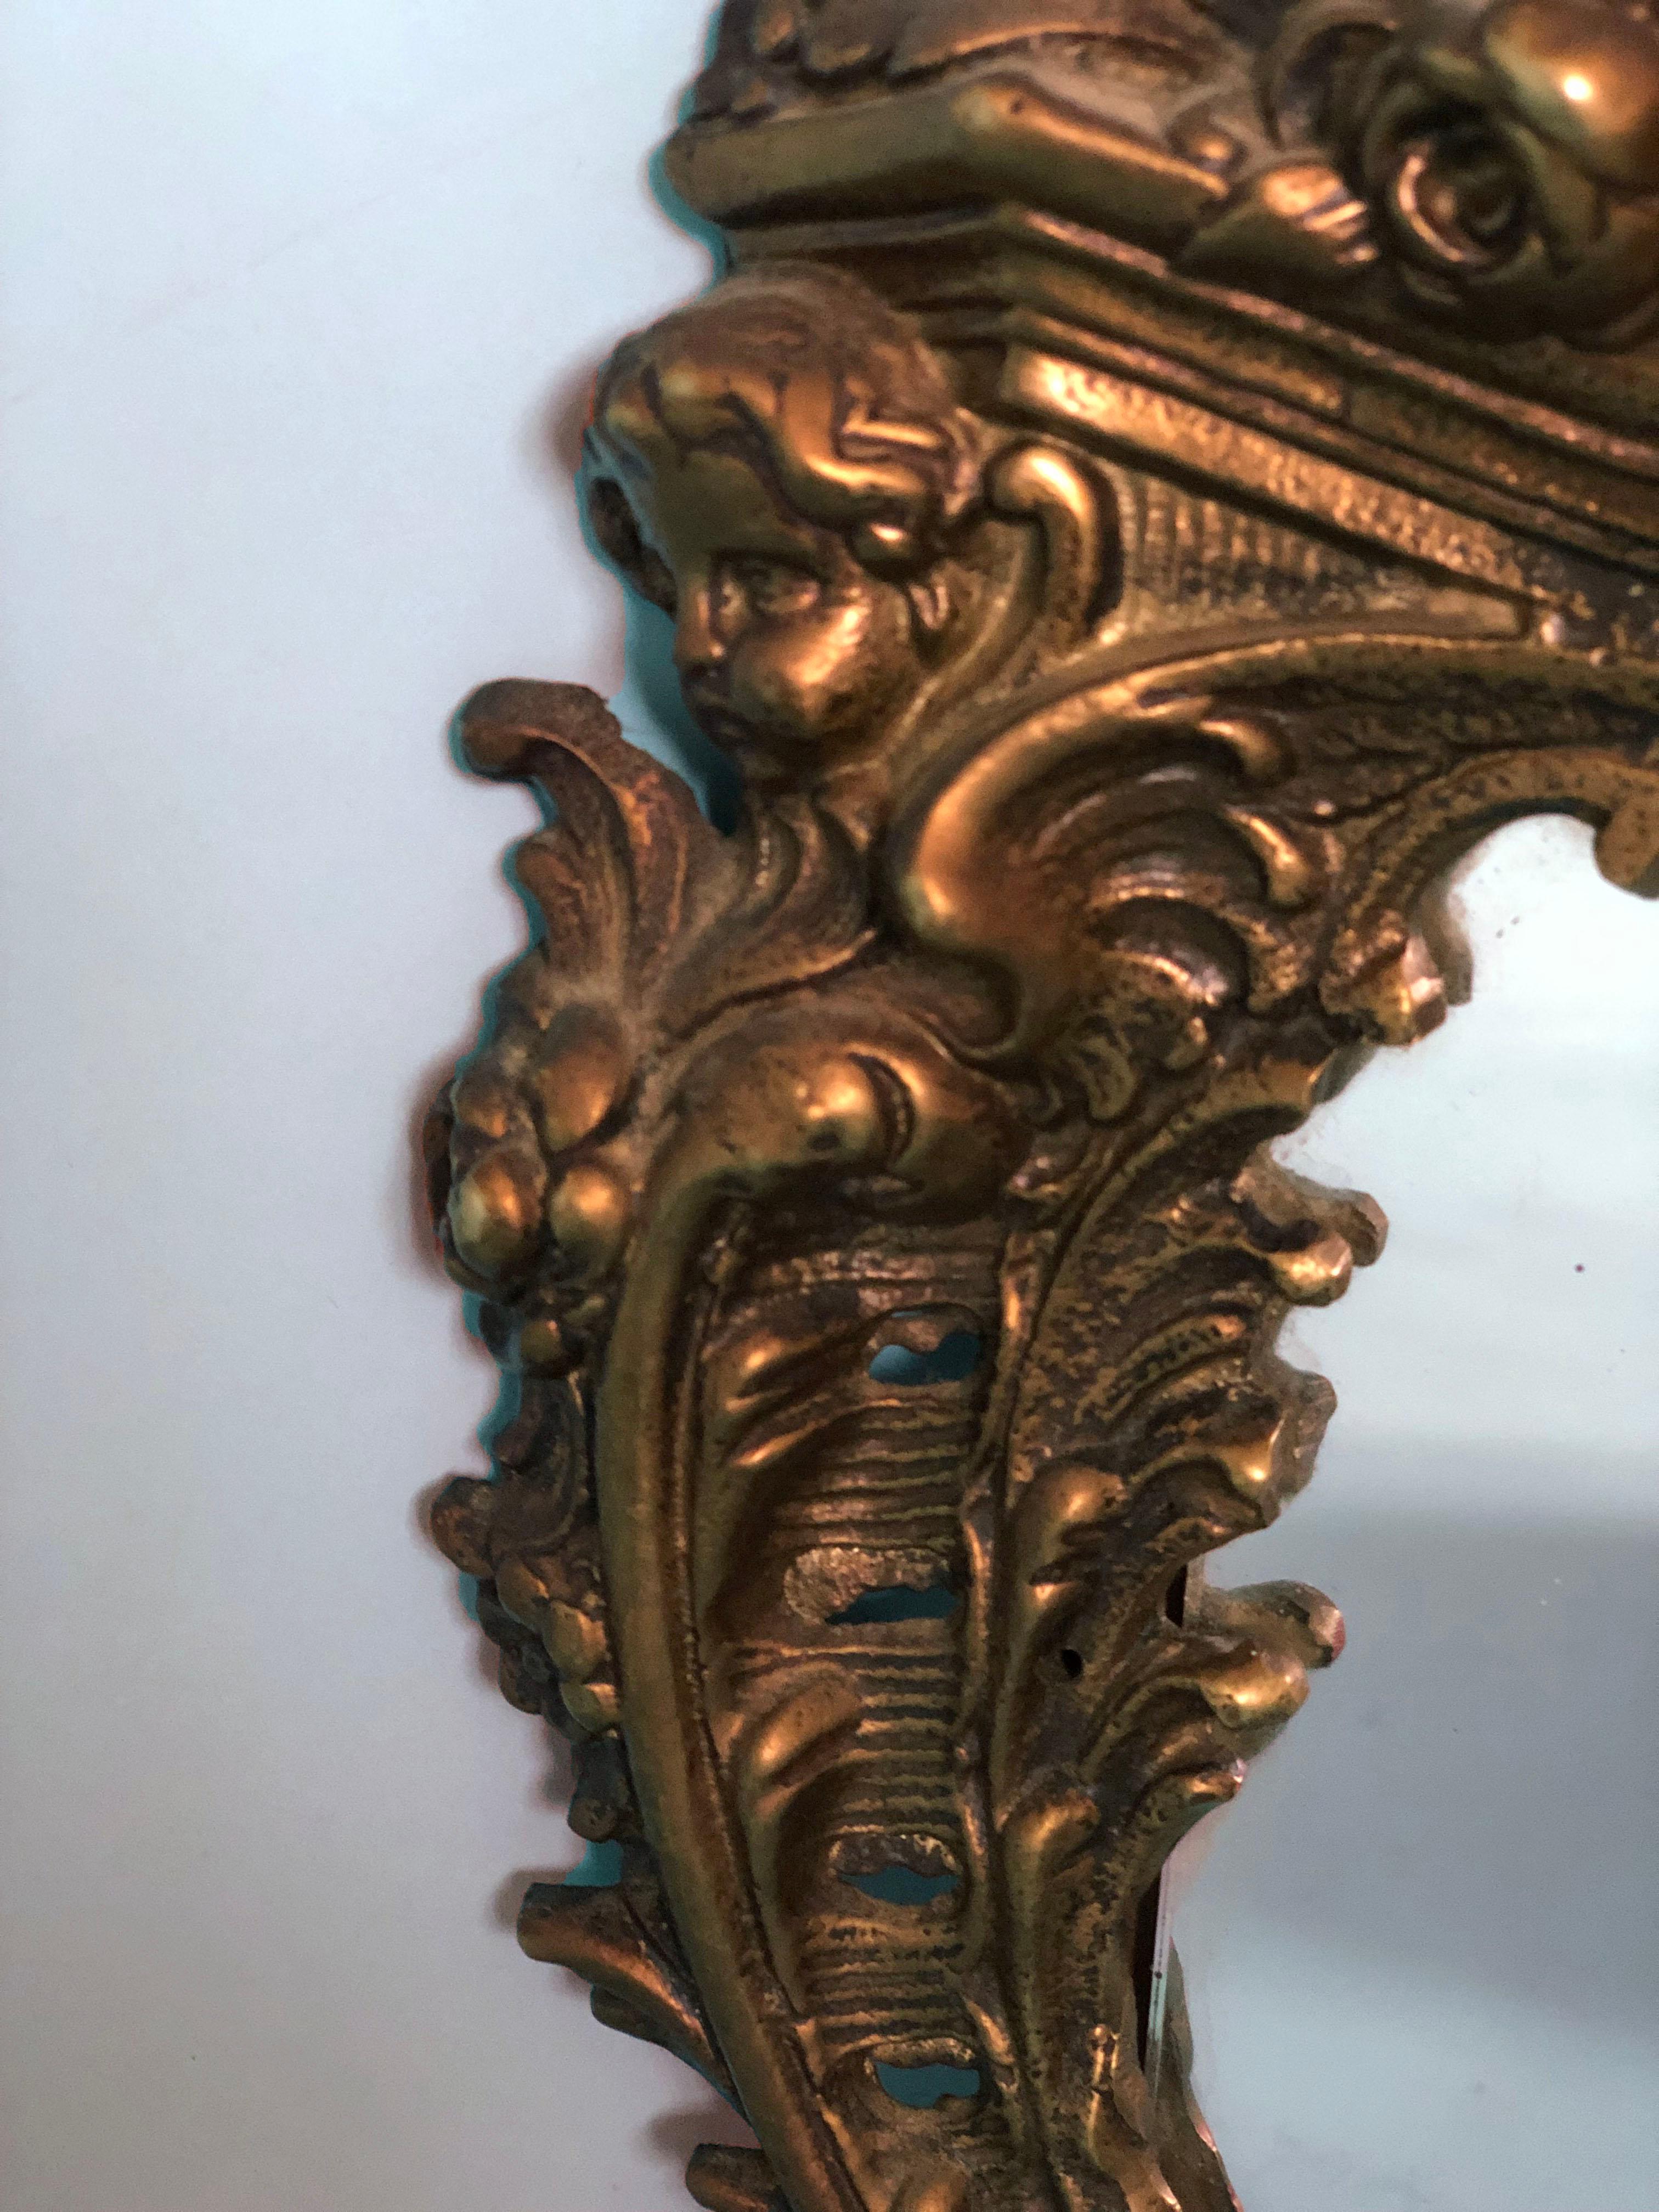 Miroir de table en or, richement détaillé, de style rococo. Ce miroir antique en bronze reposant sur deux pieds est orné d'une tête de chérubin sur le côté.

Miroir magnifiquement patiné par le temps En bon état. France, fin du 19e siècle.

Objet :